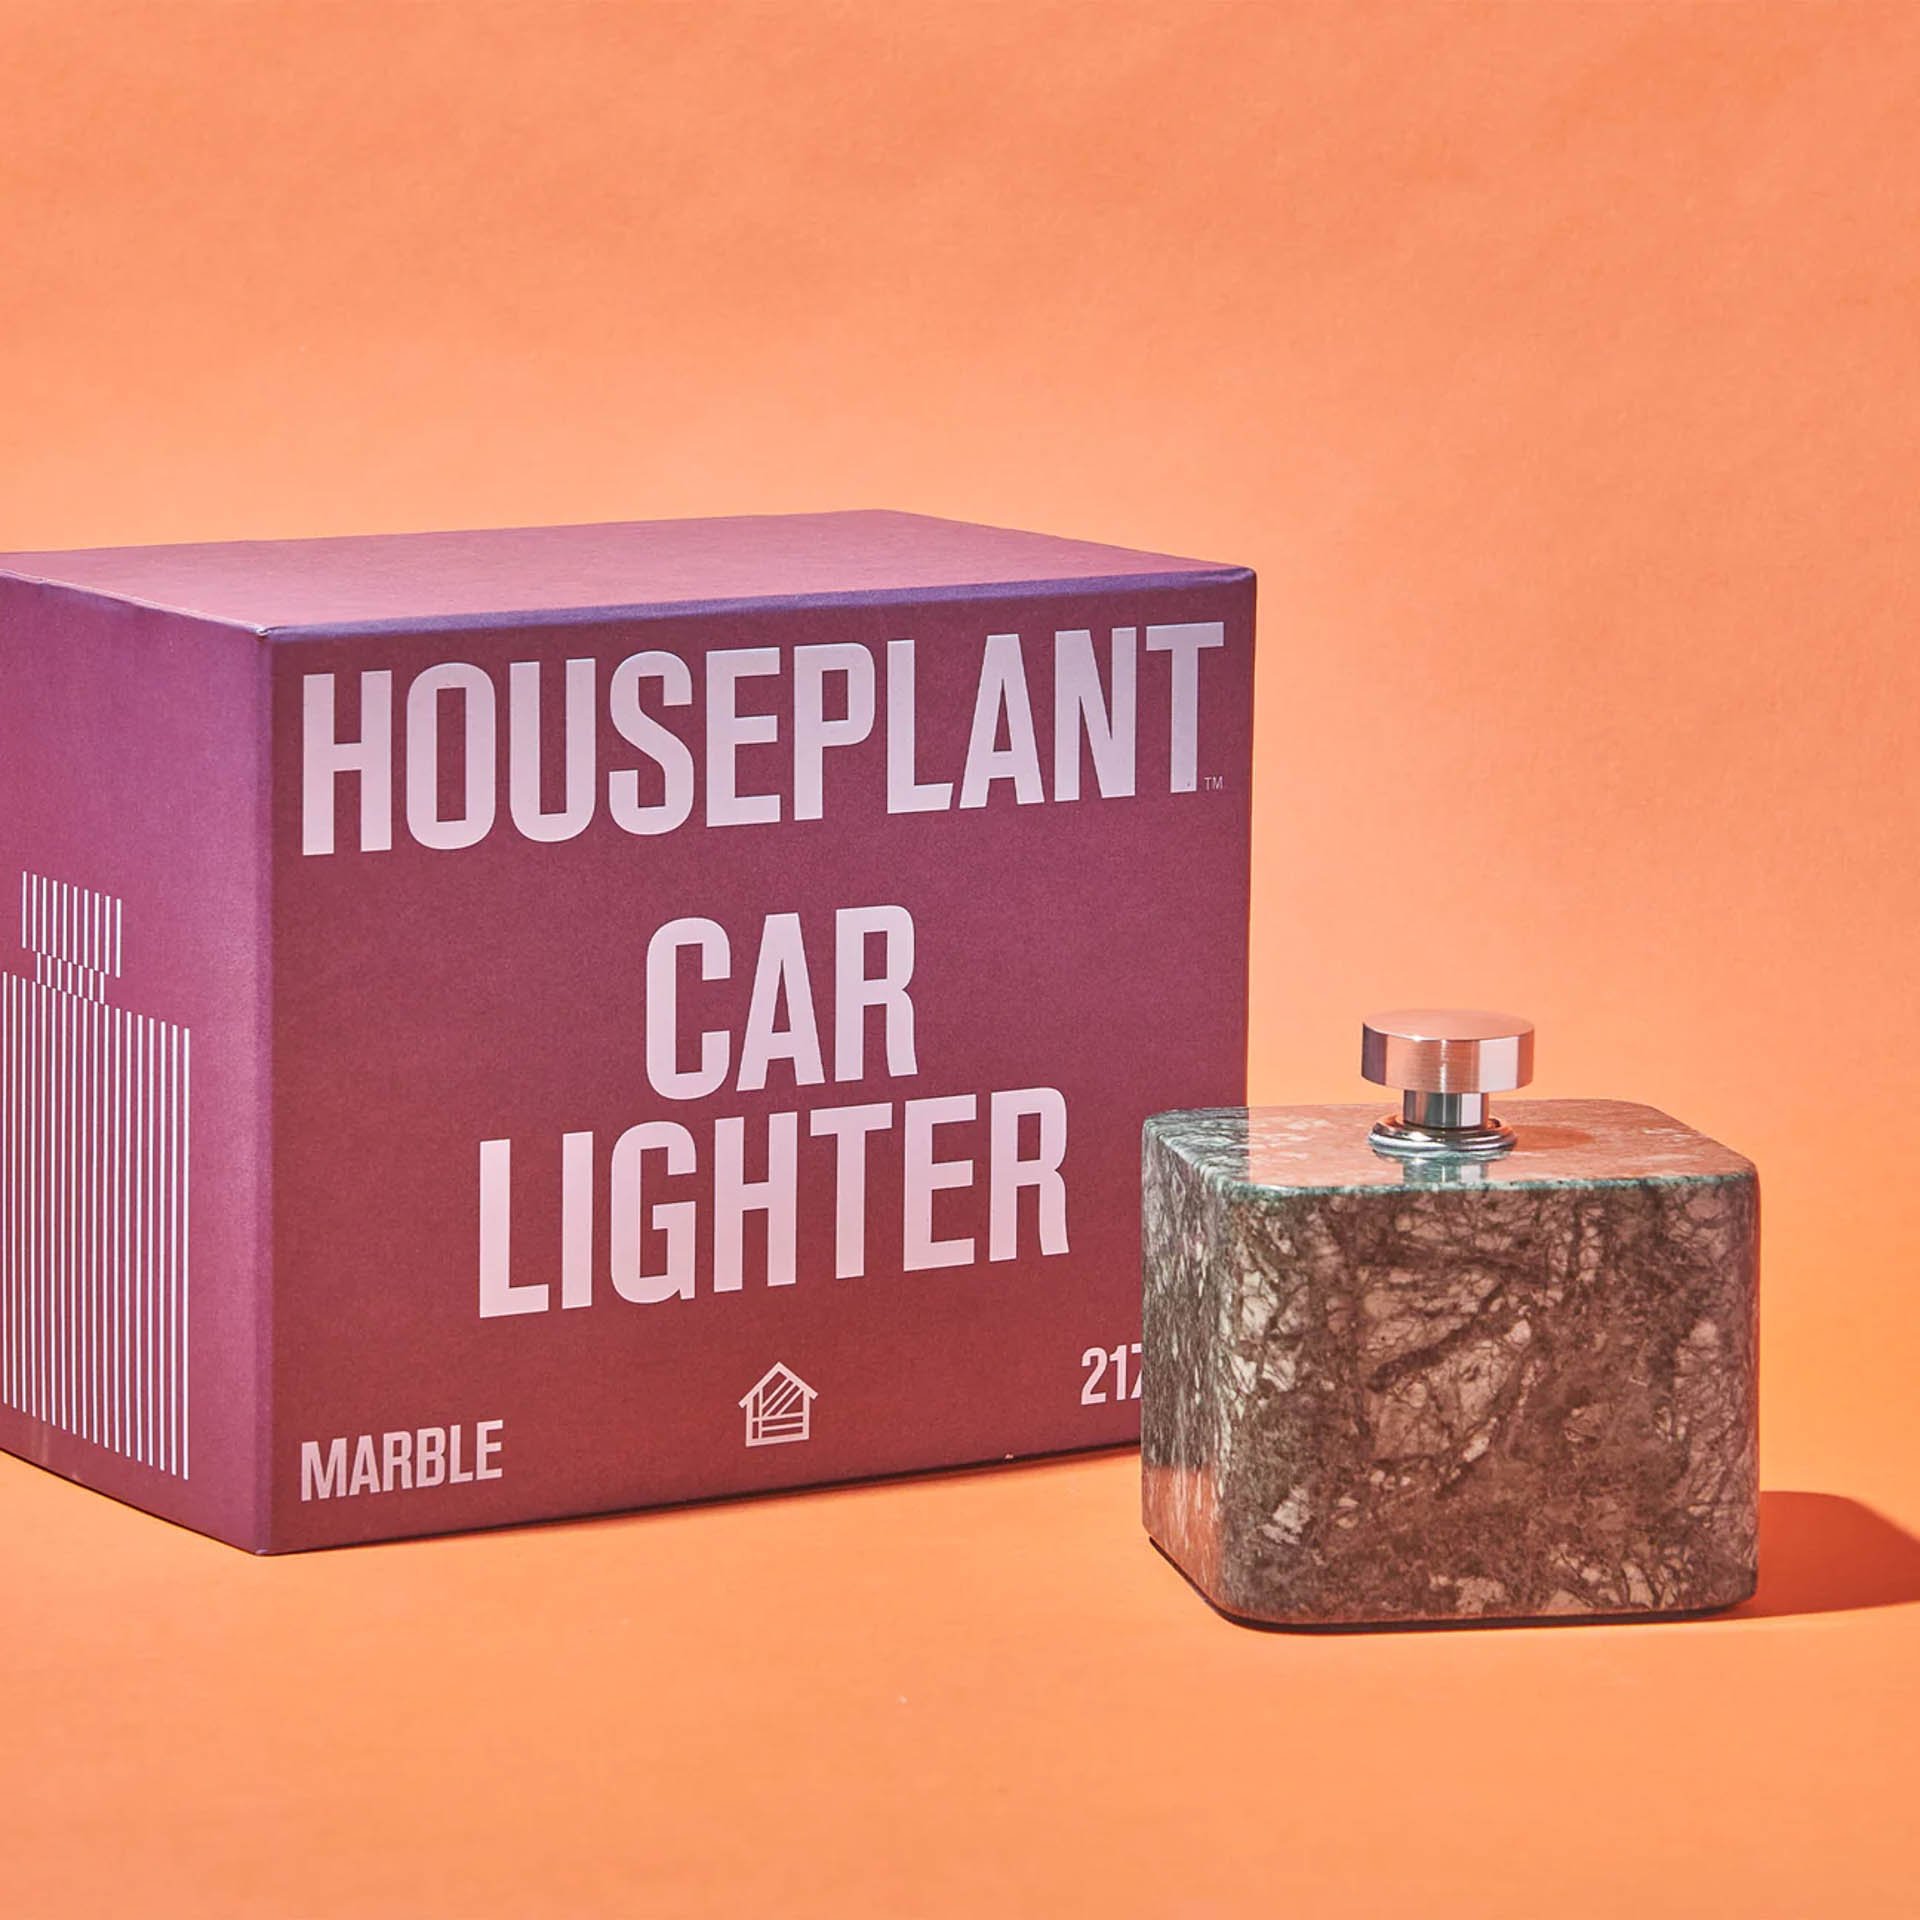 Houseplant Car Lighter